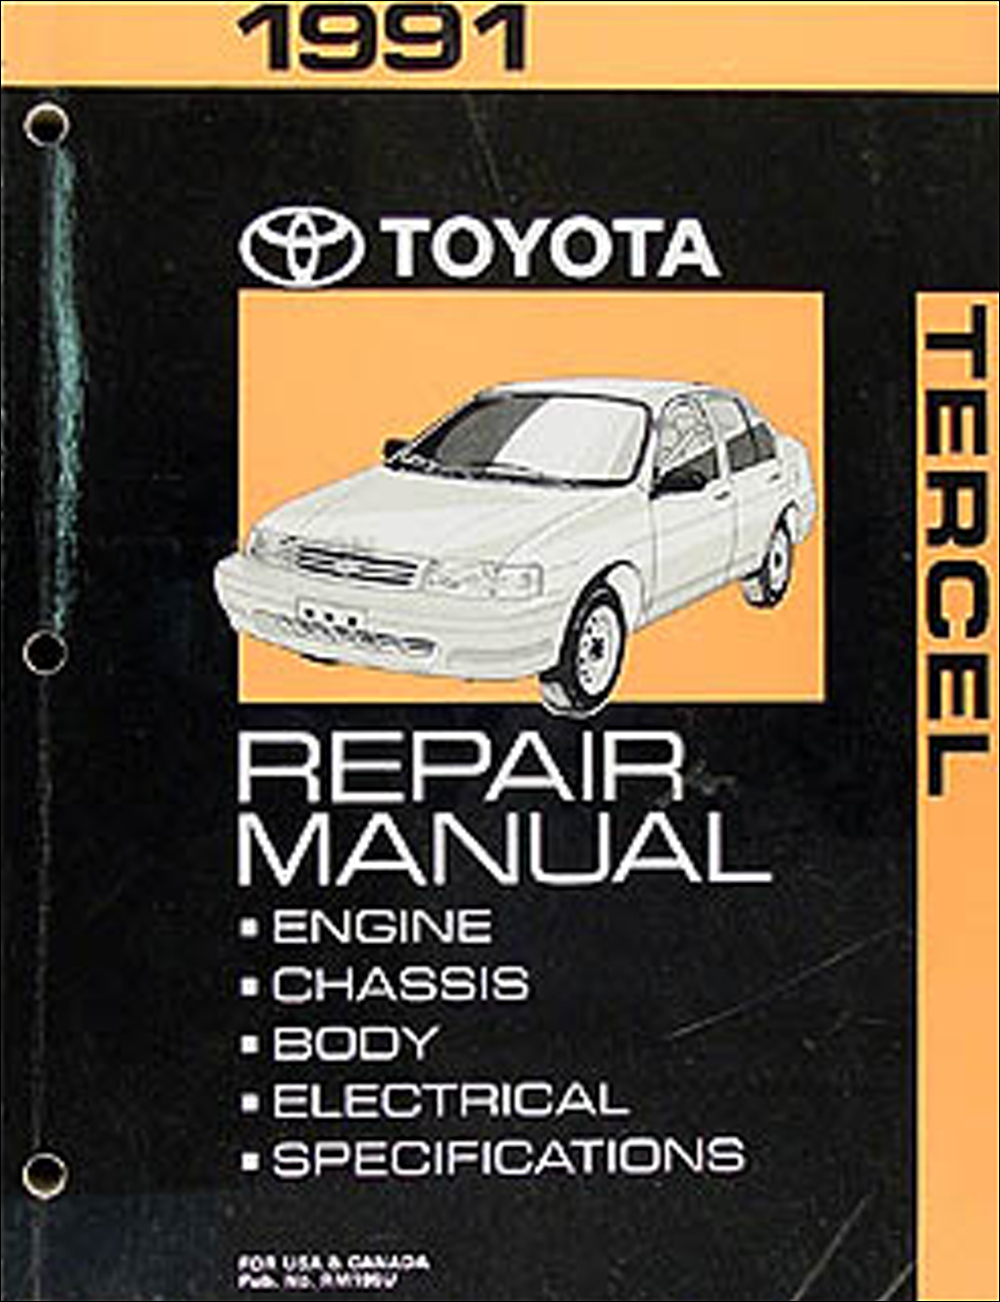 1991 Toyota Tercel Repair Manual Original